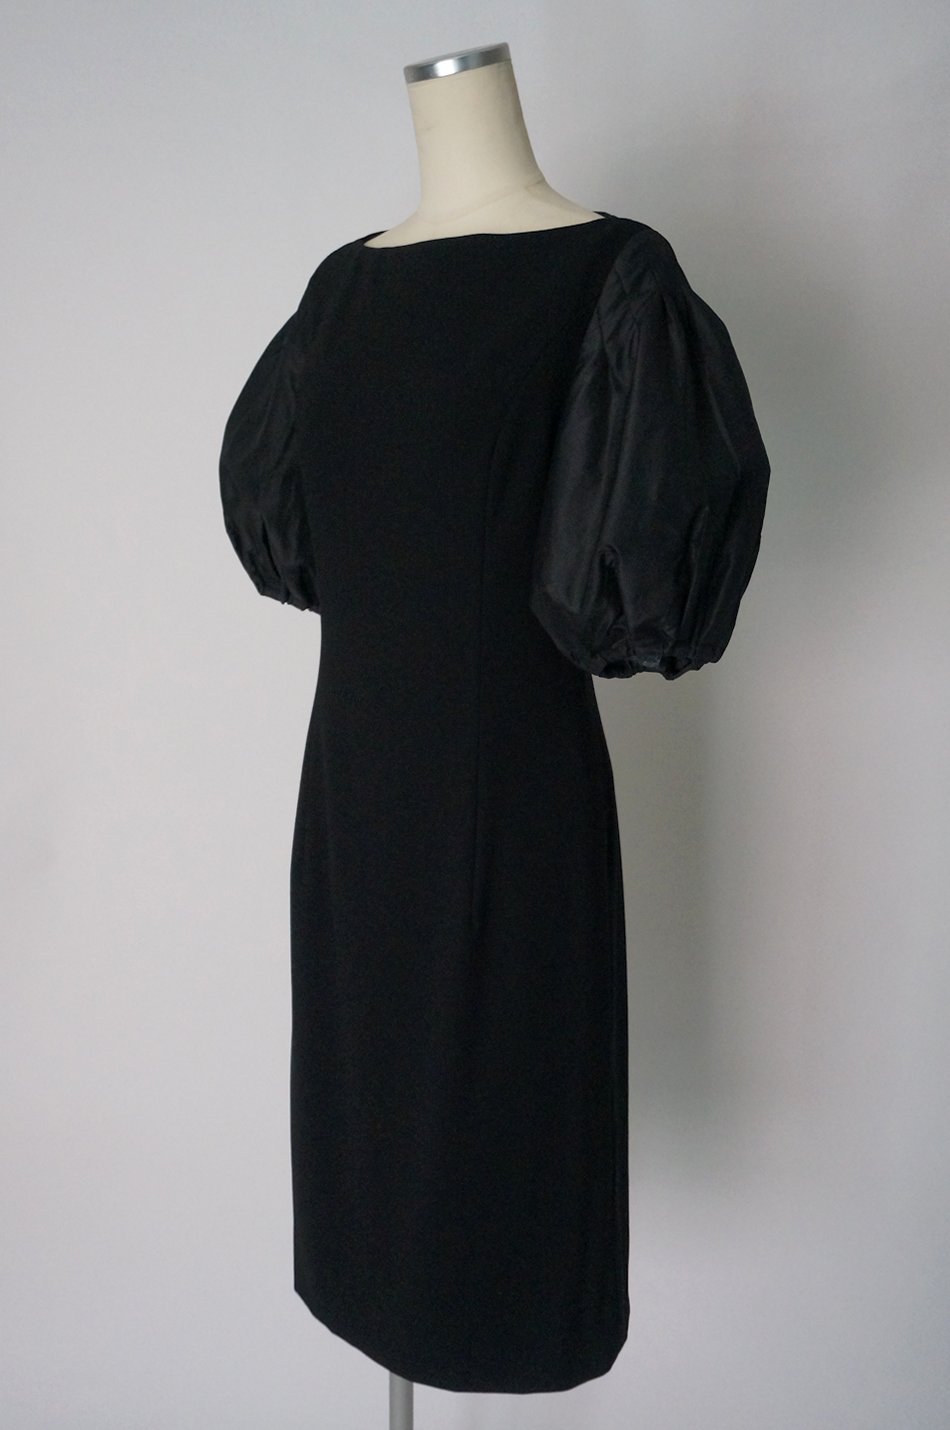 FOXEY タフタのラウンドフォルム半袖ドレス40 / レンタルリトルブラックドレス テン Rental Little Black Dress